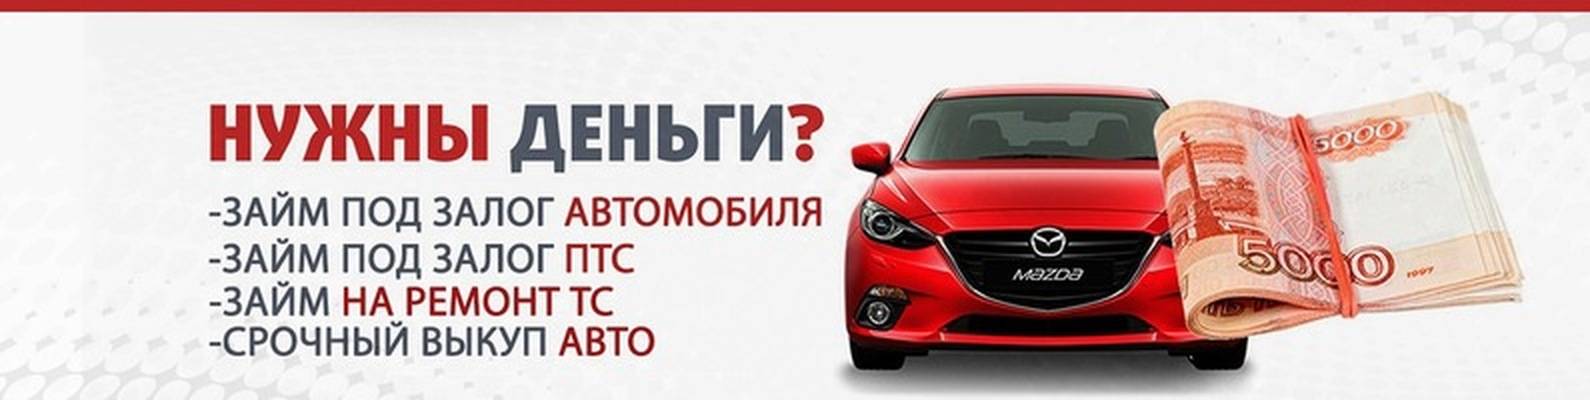 Кредиты под залог автомобиля в москве